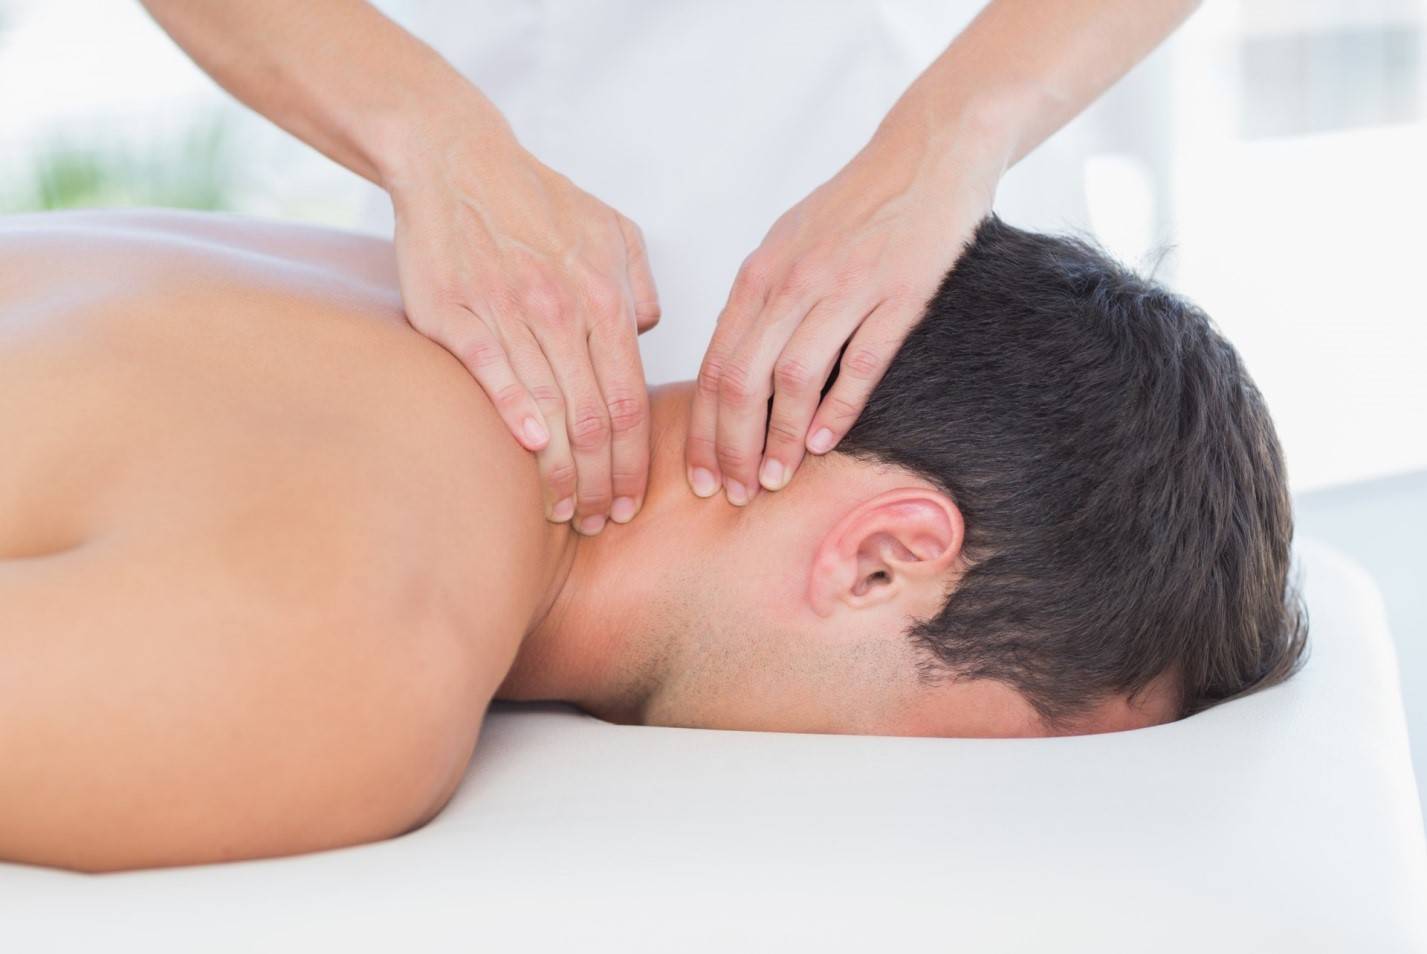 Как делать массаж при болях в спине и пояснице?